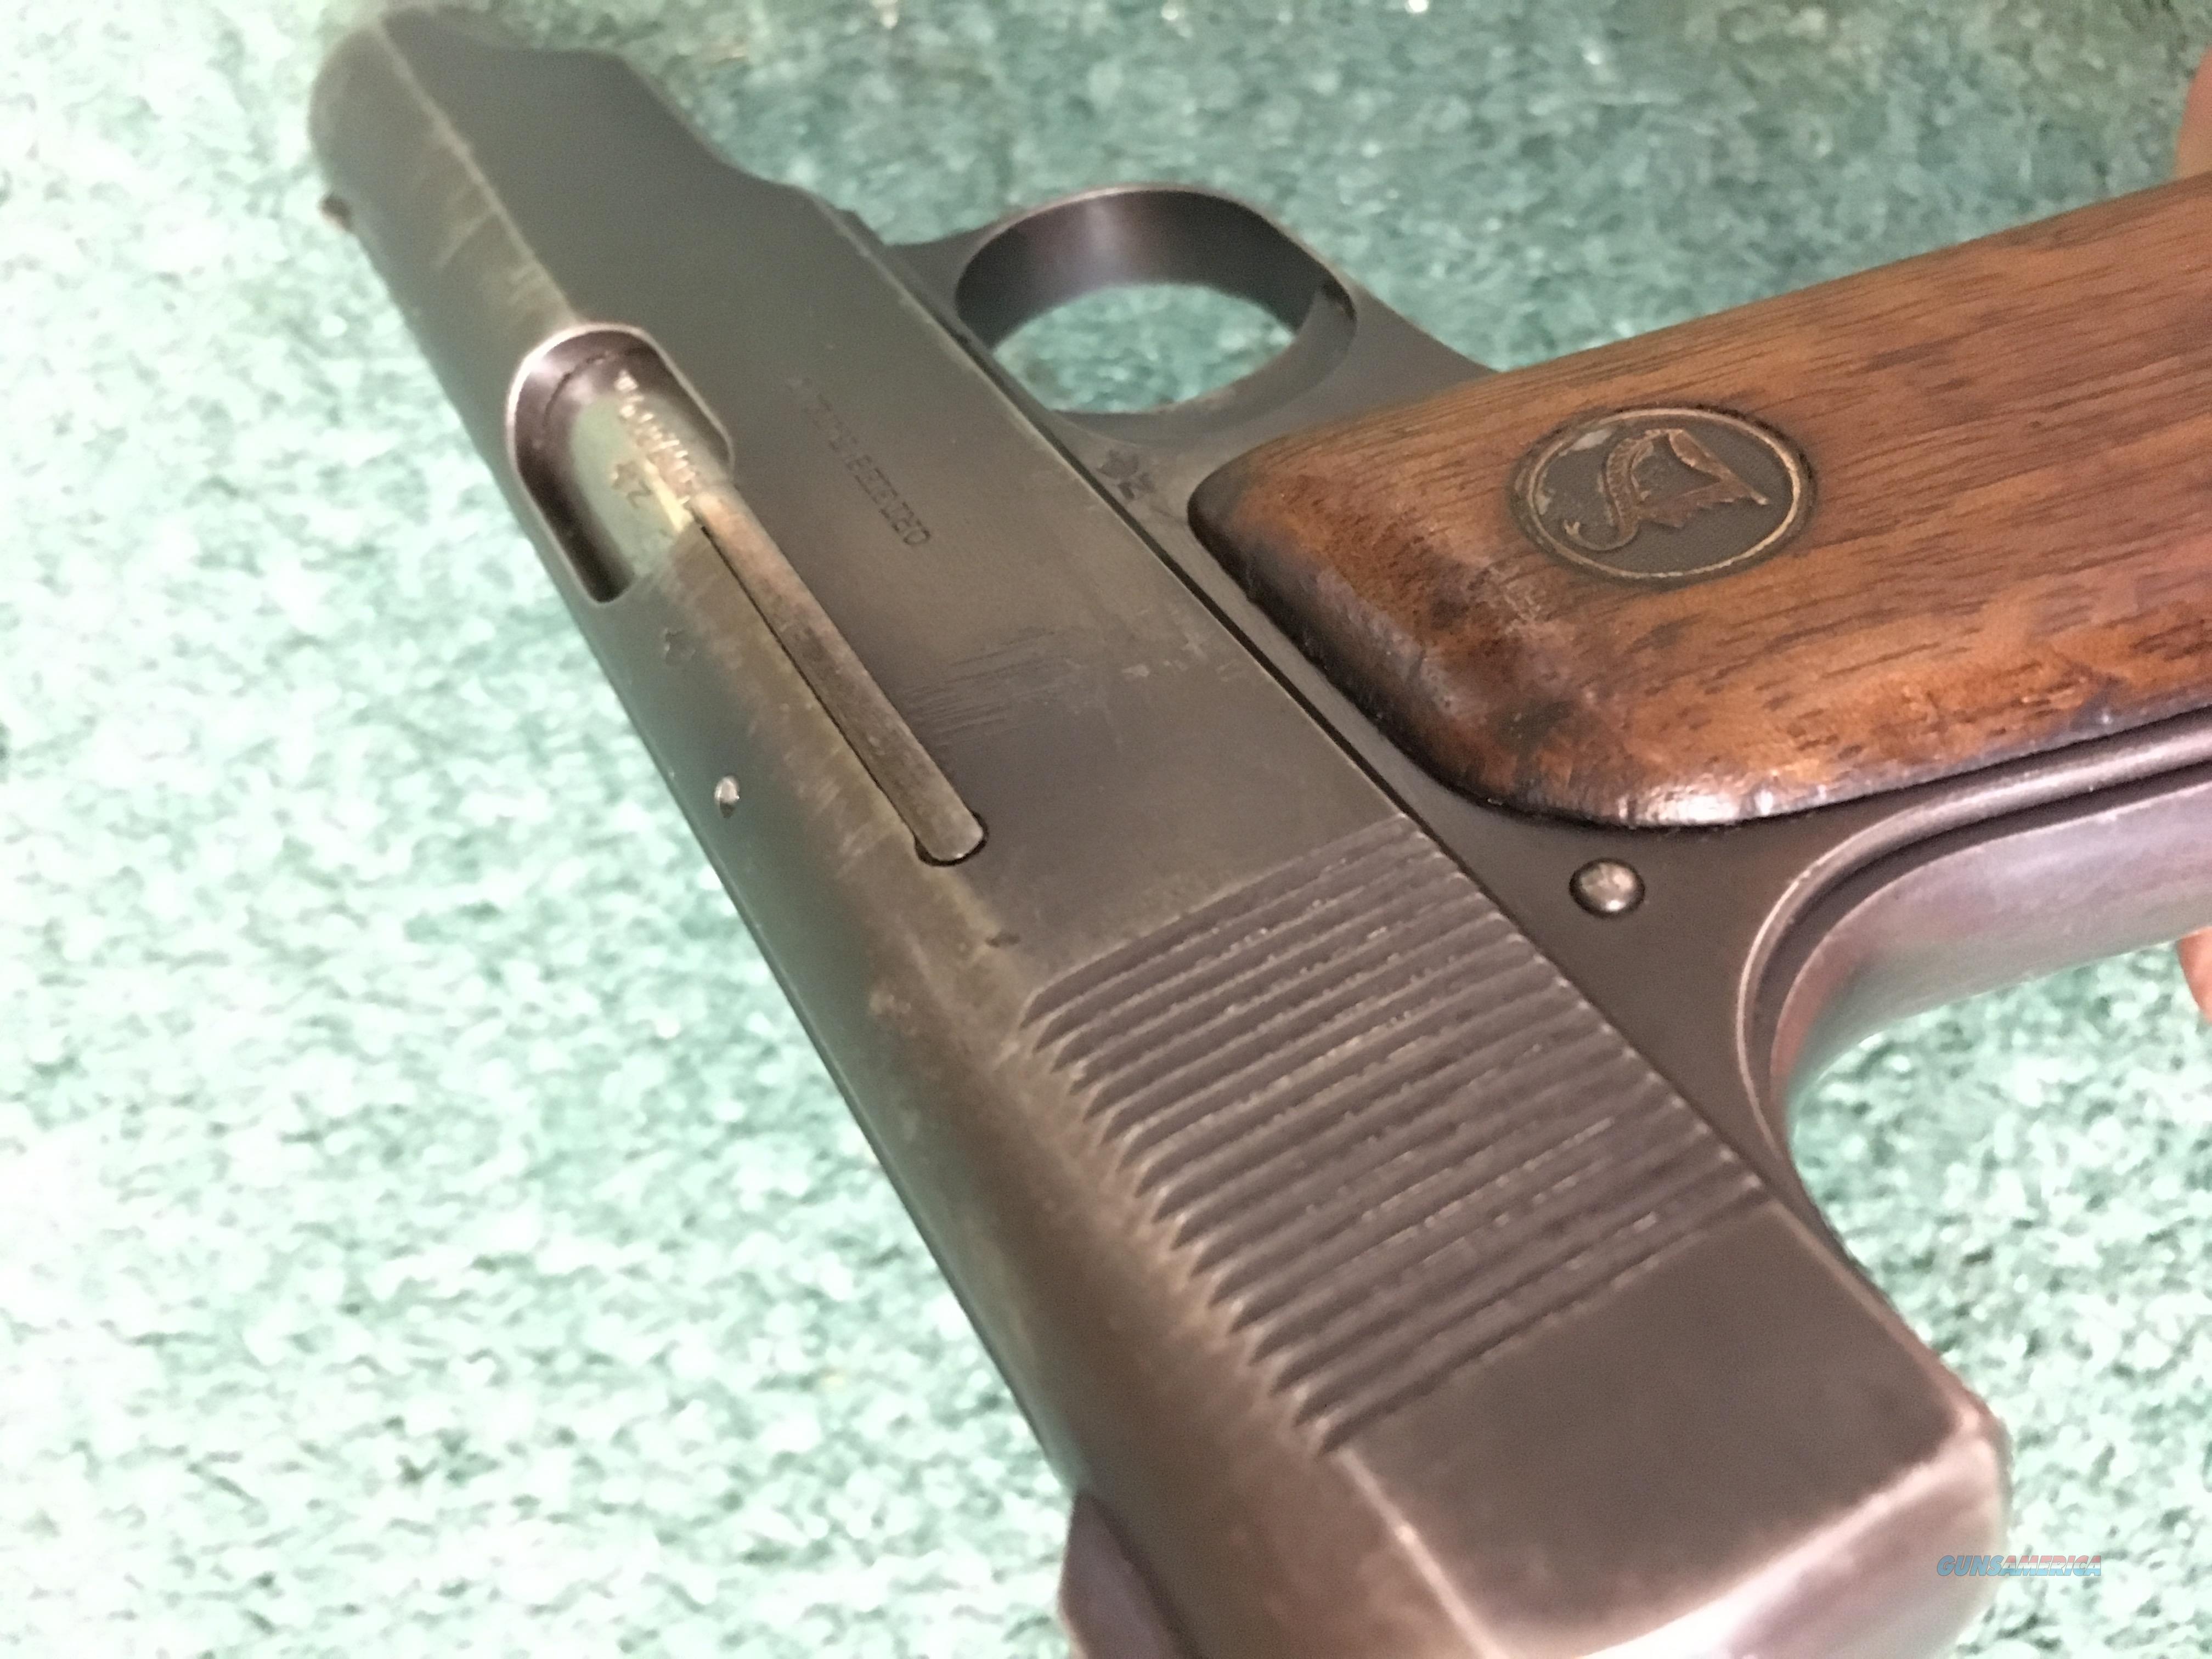 ortgies pistol serial numbers